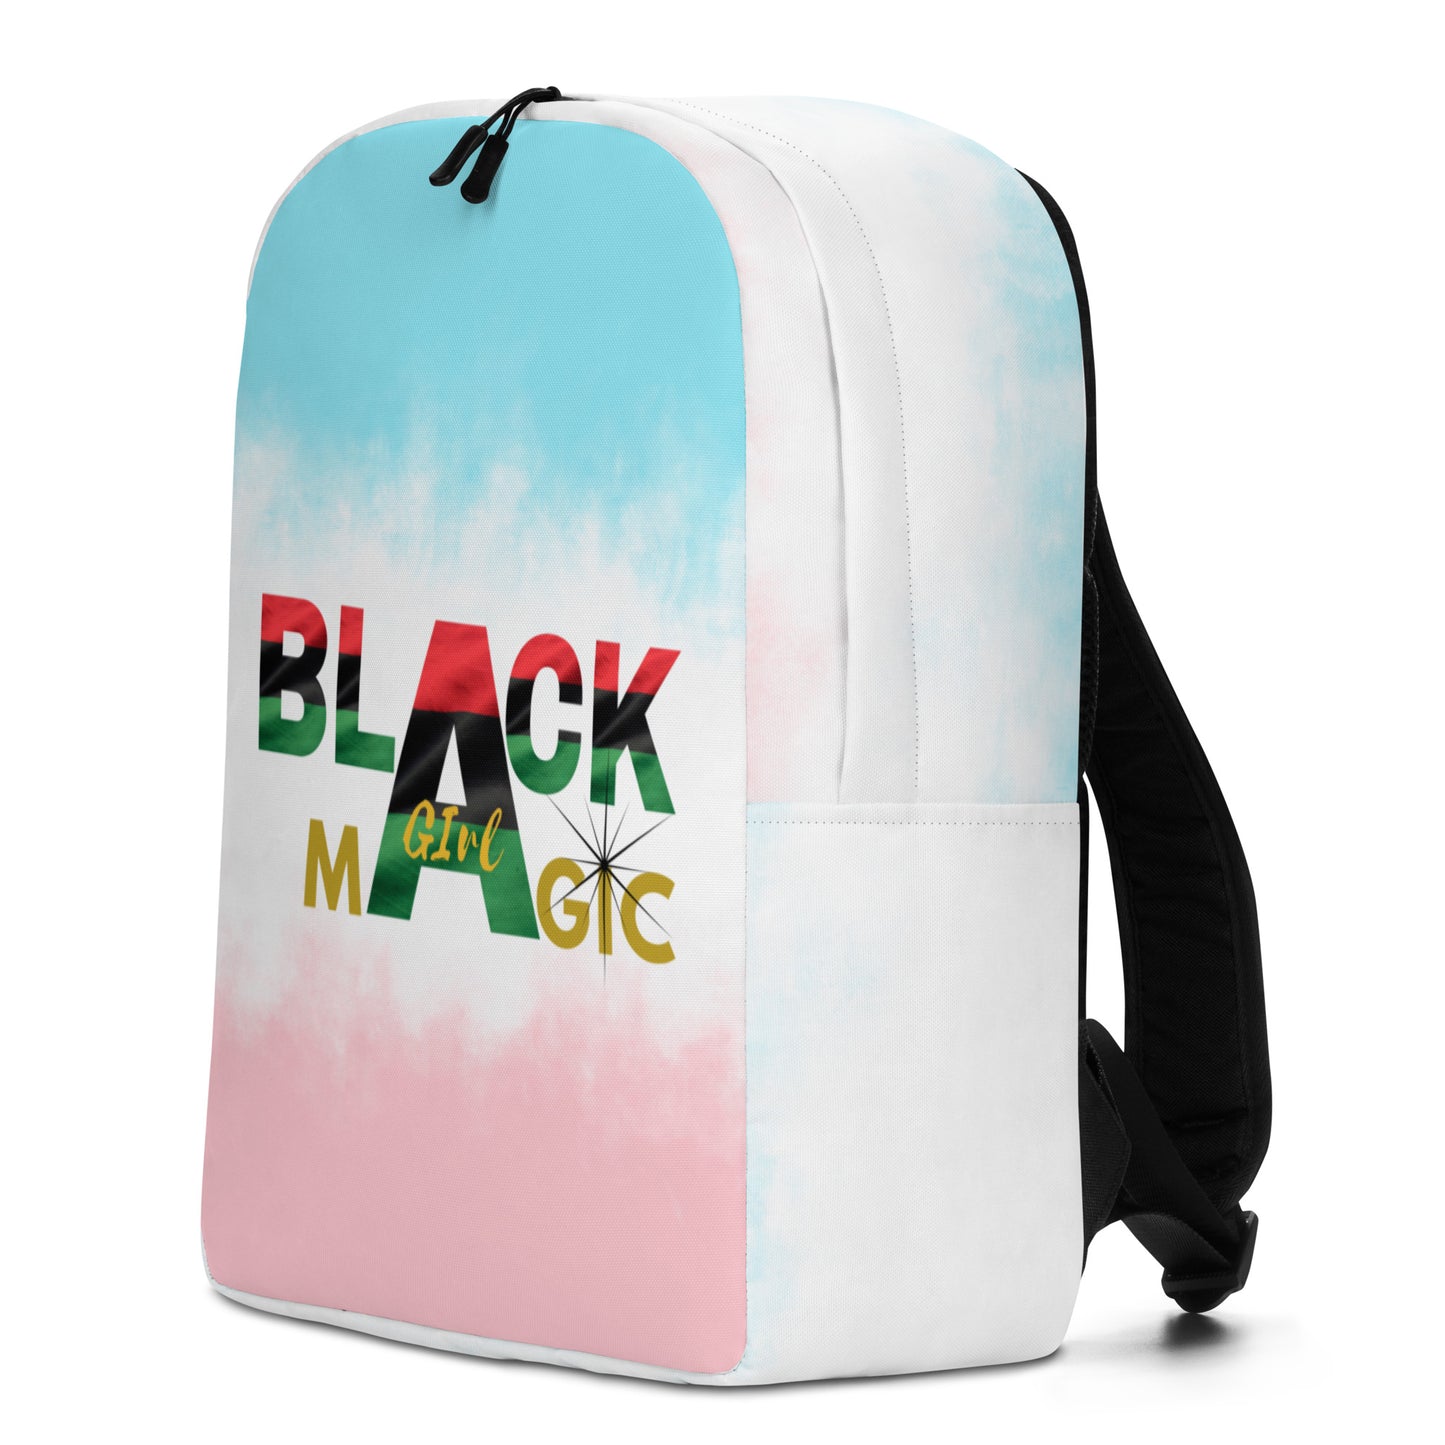 Black Girl Magic Minimalist Backpack